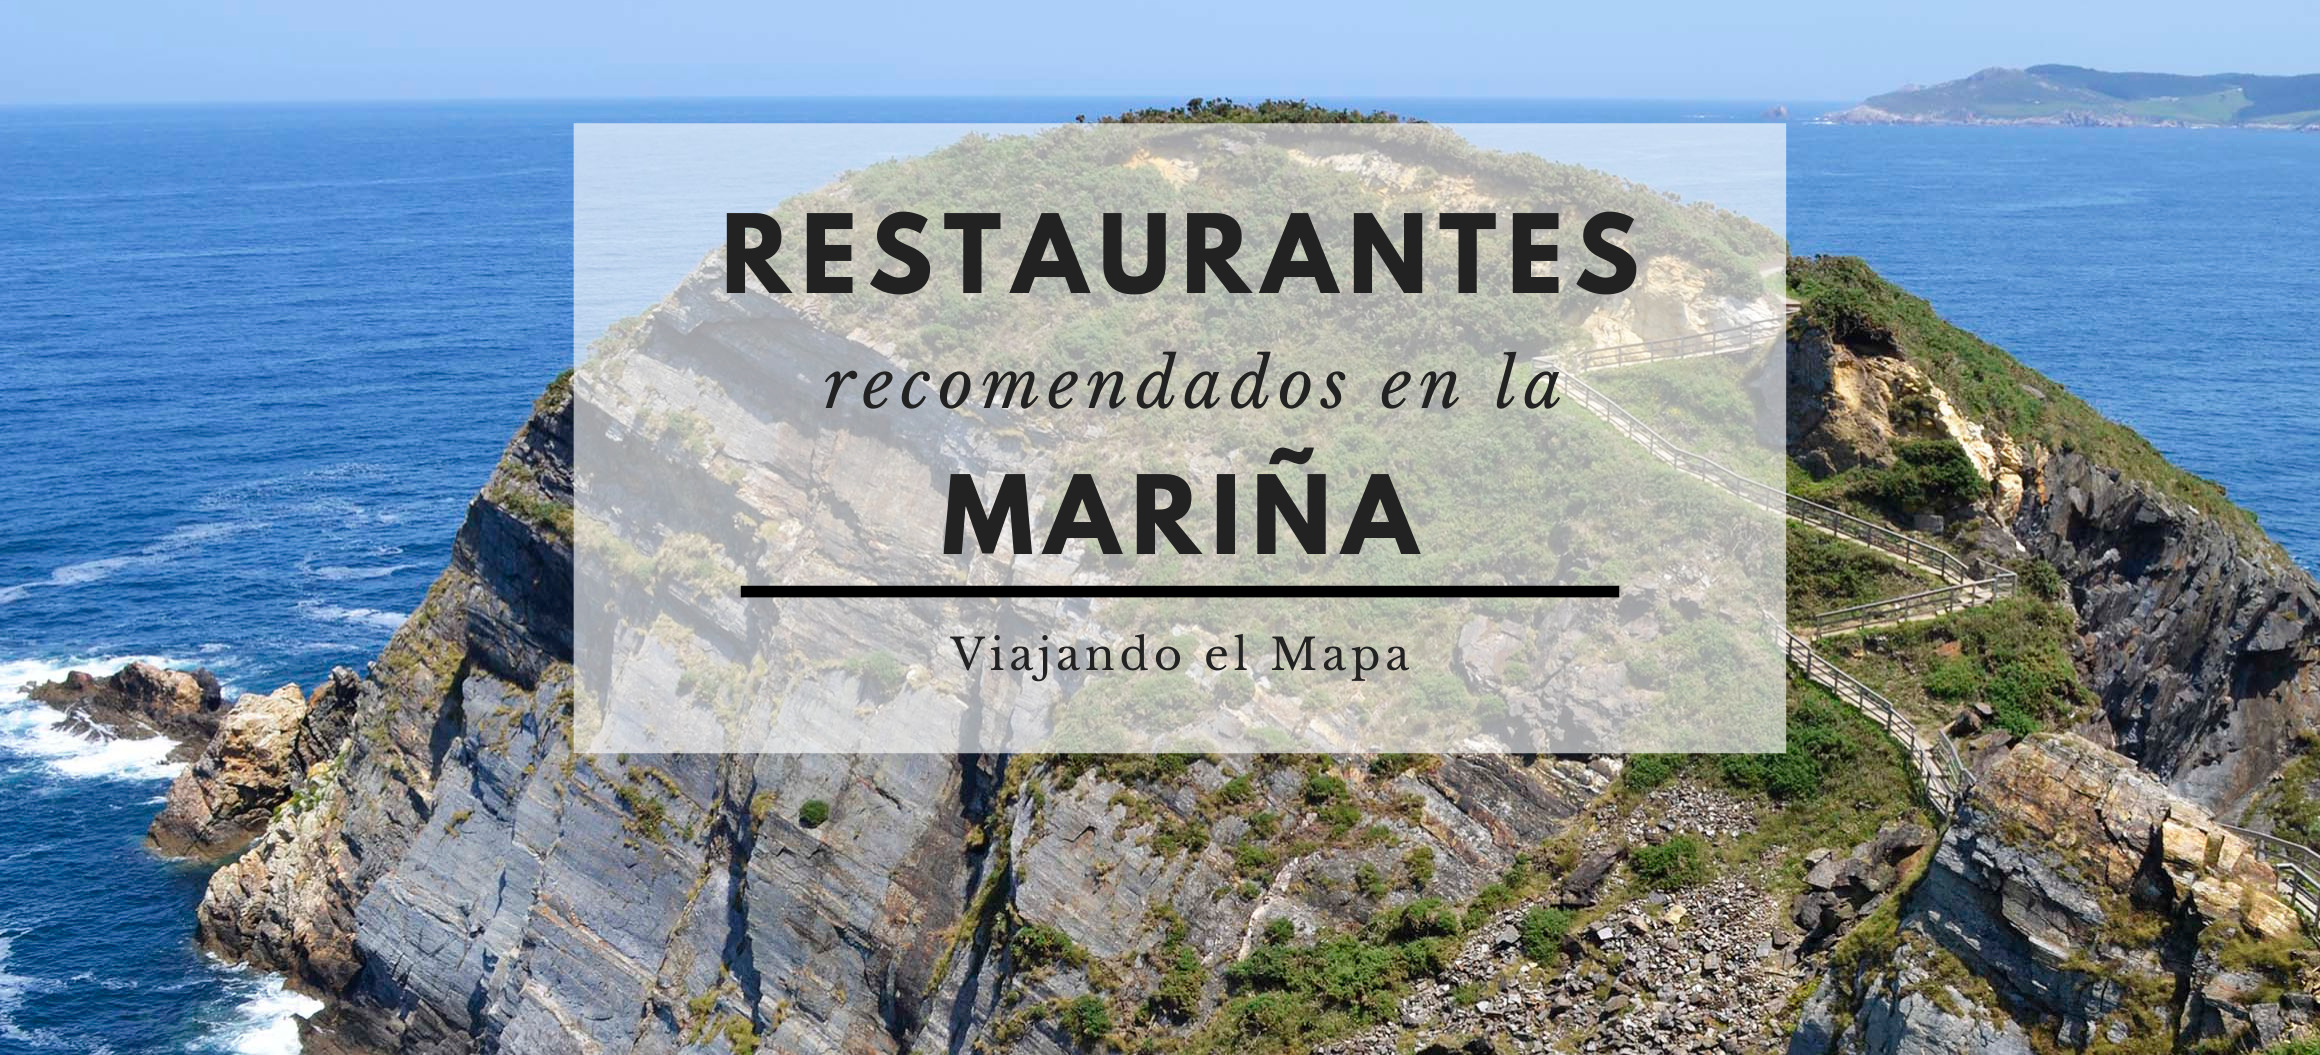 restaurantes-recomendados-mariña